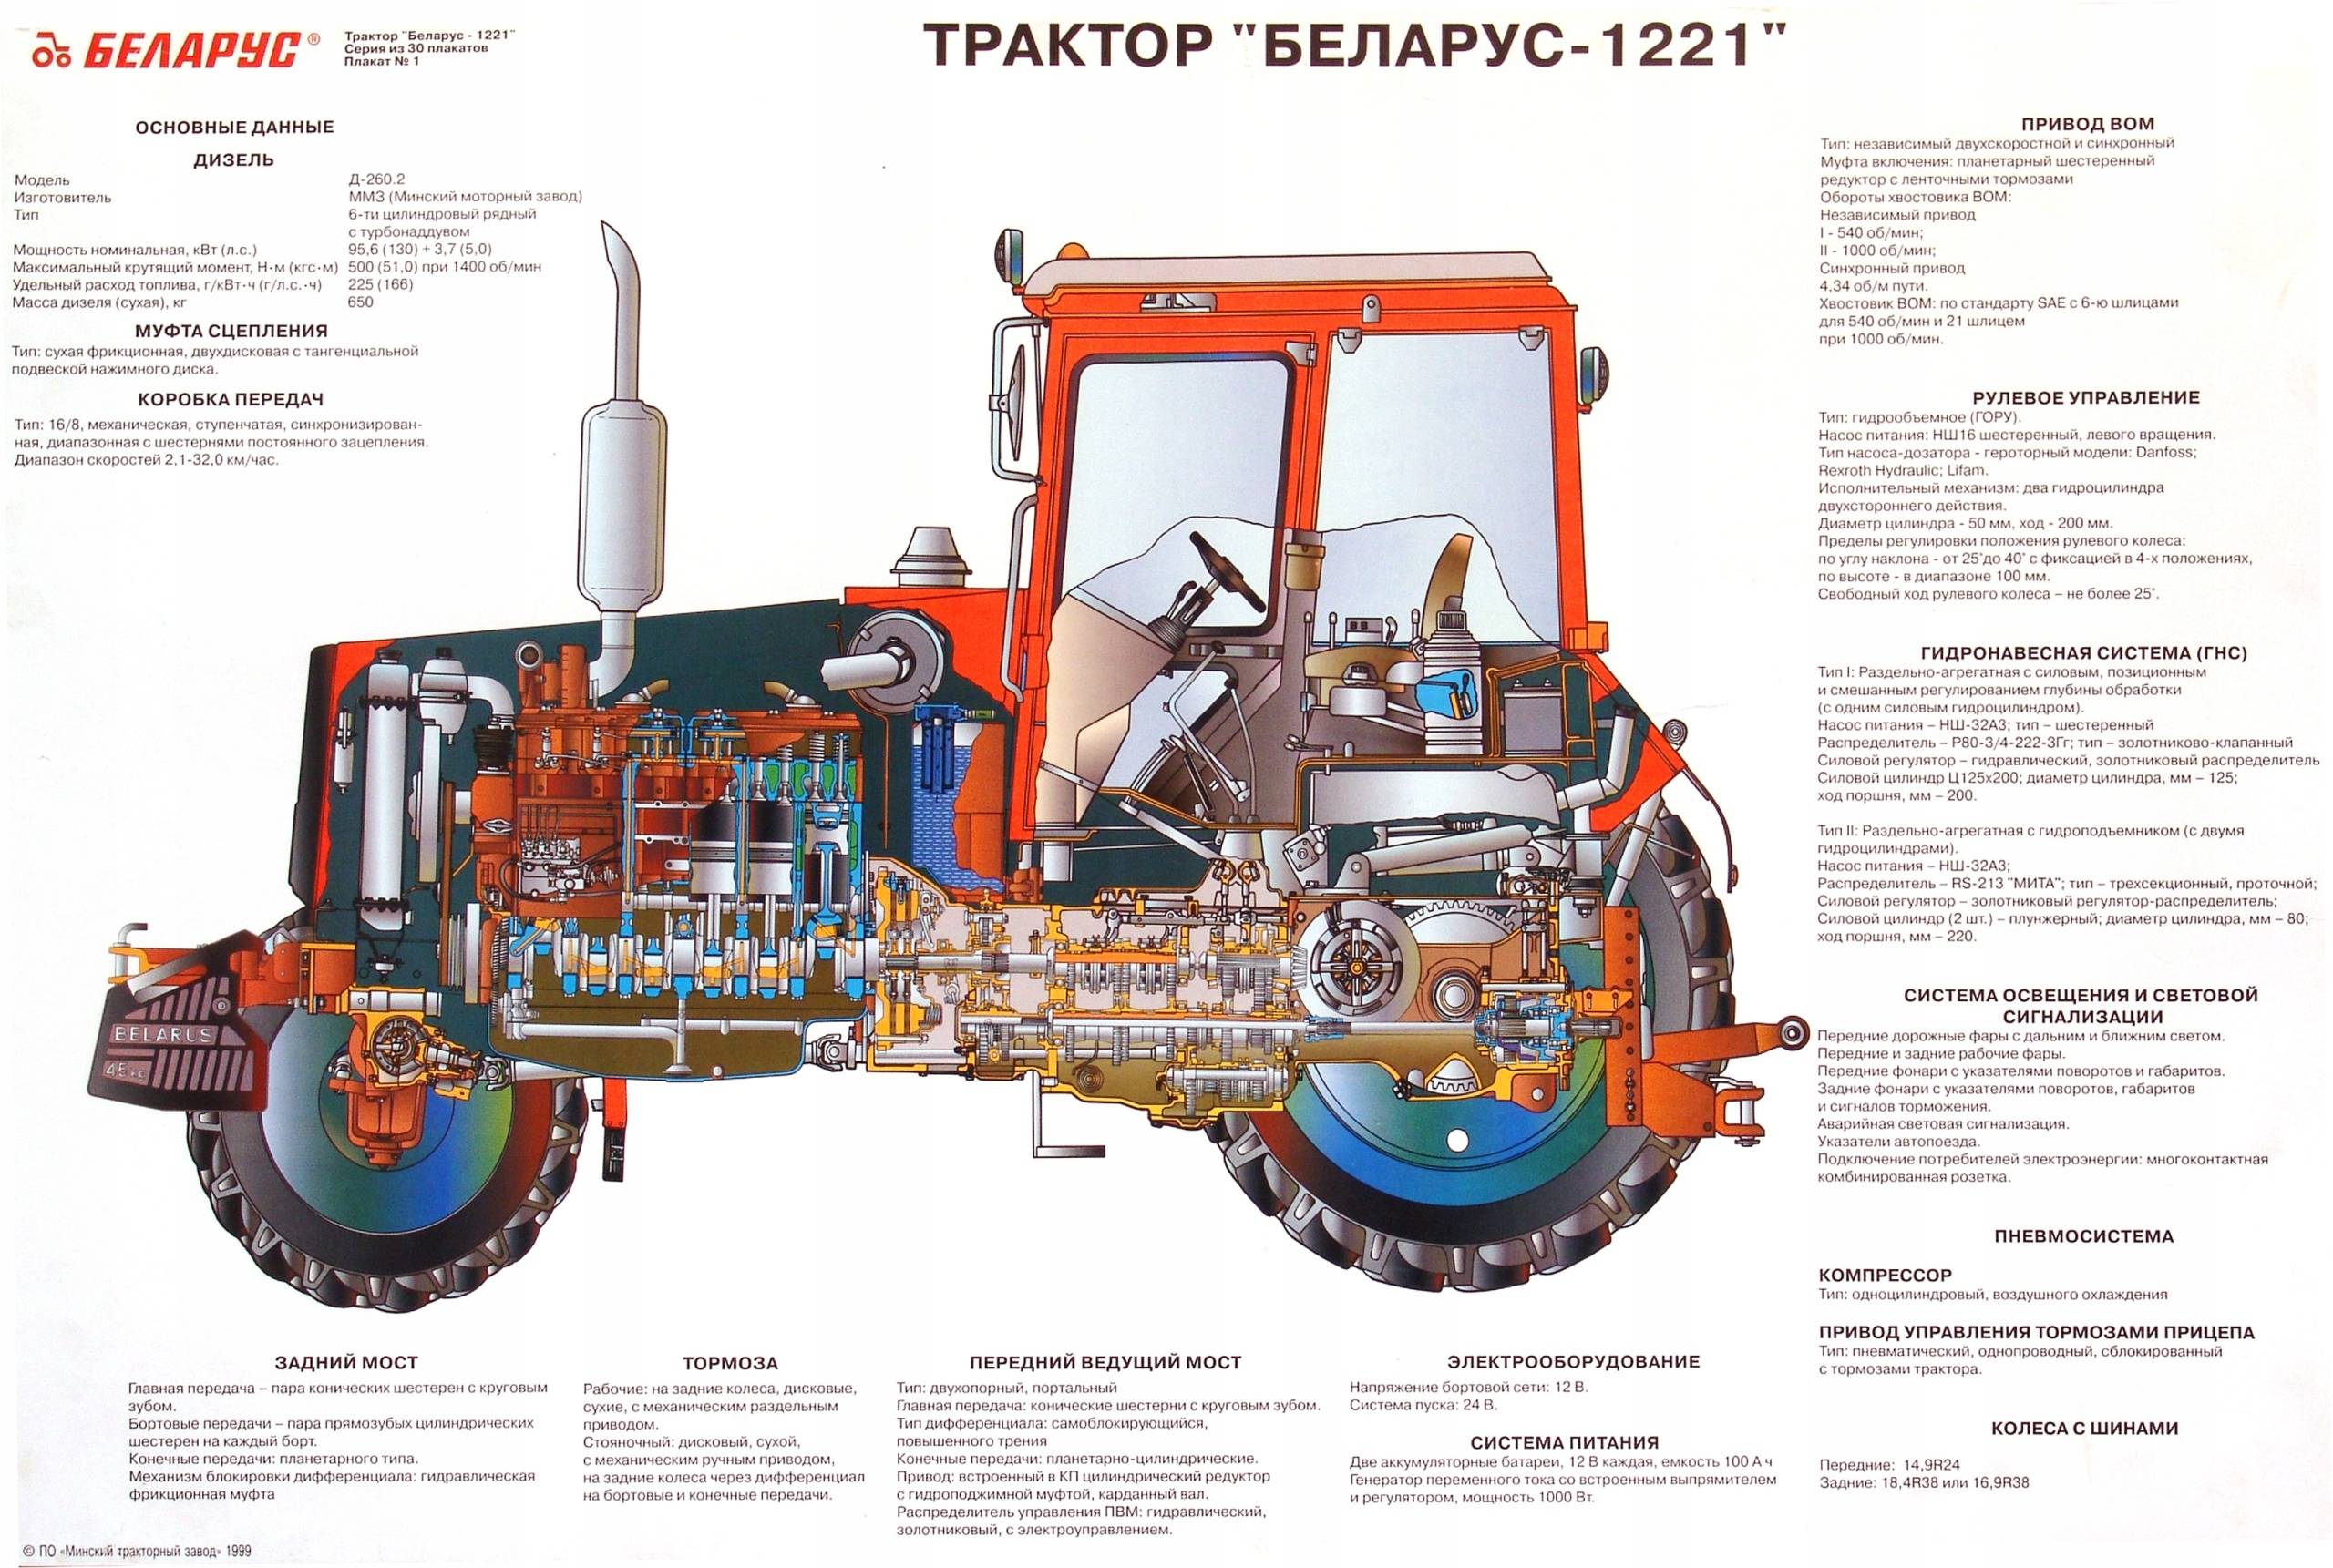 Трактор мтз-50 и мтз-52 - особенности и преимущества моделей